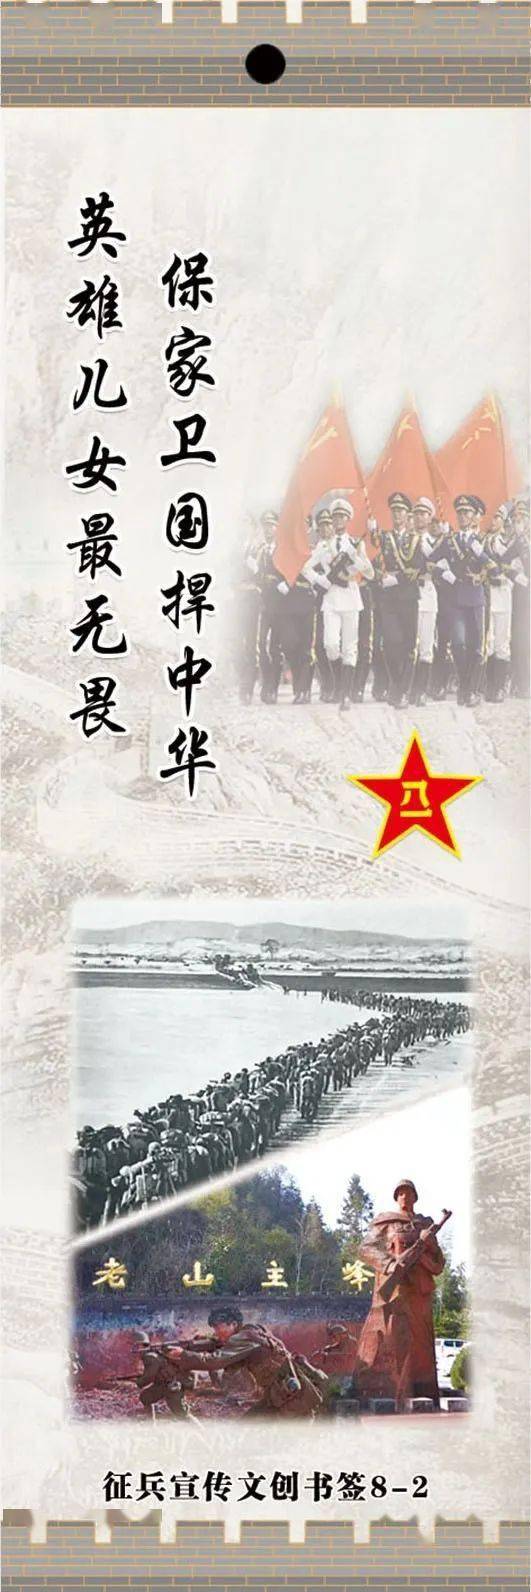 漳州军分区正式发布第二套征兵宣传文创书签